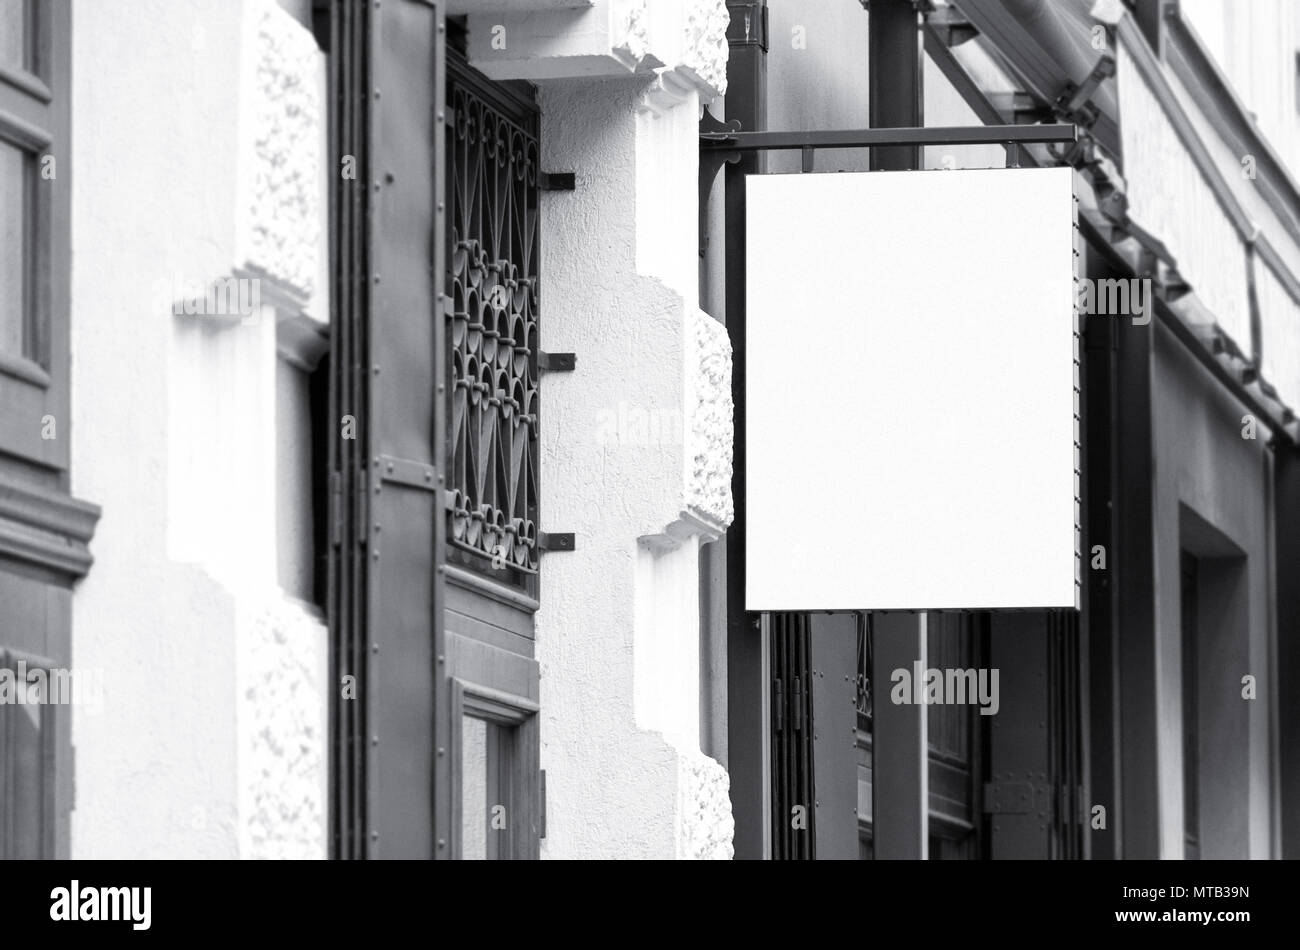 Cuadrado blanco de señalización comercial exterior boceto, en blanco y negro La imagen de la arquitectura real Foto de stock